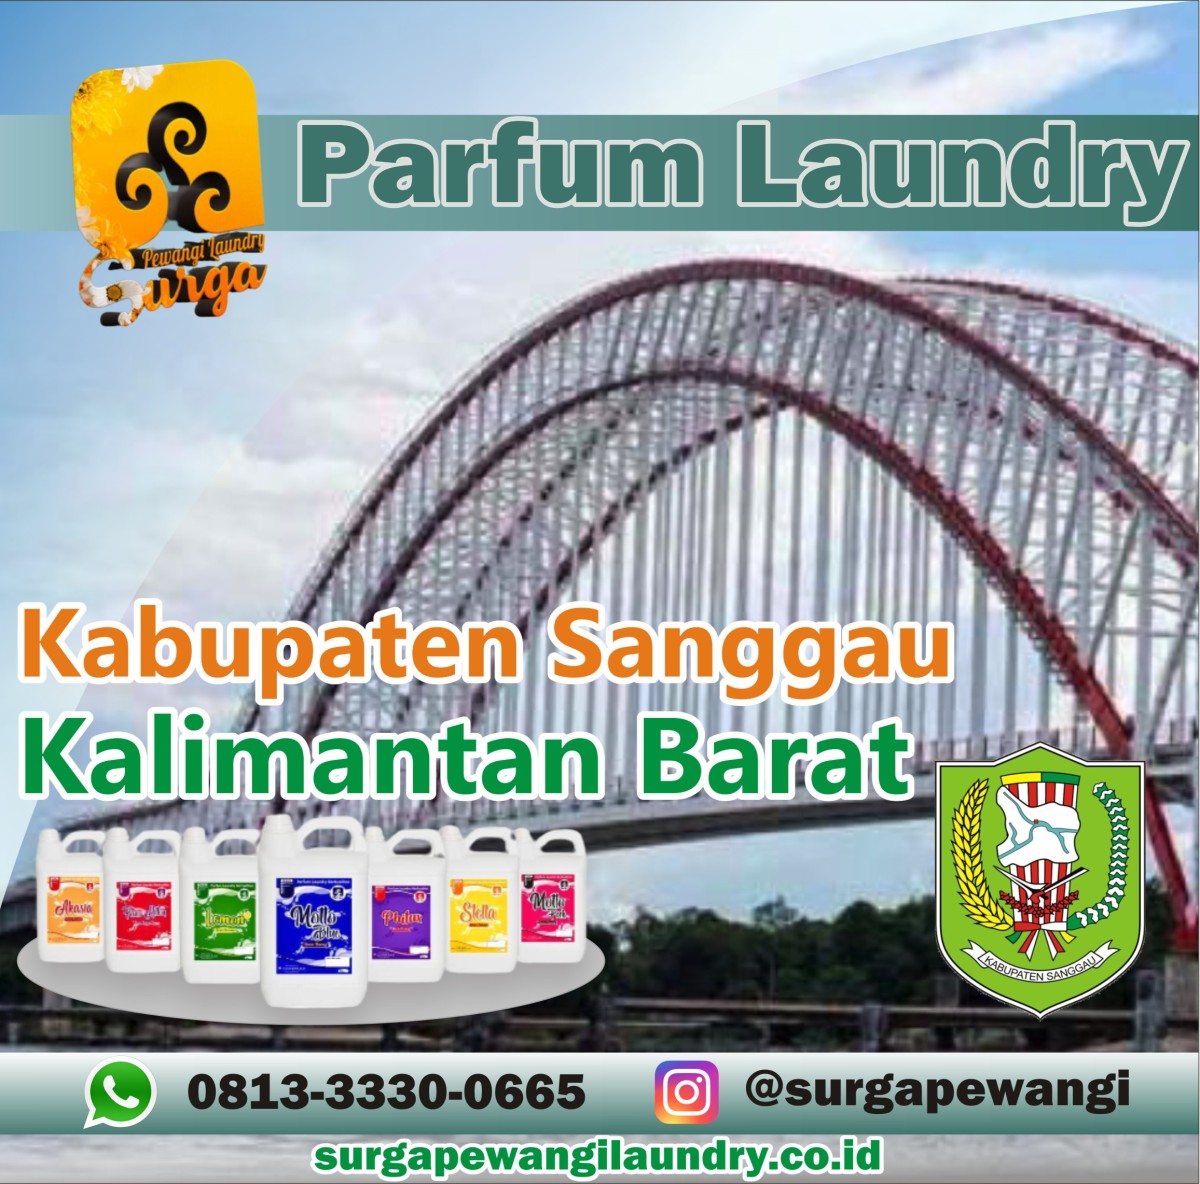 Parfum Laundry Kabupaten Sekadau, Kalimantan Barat